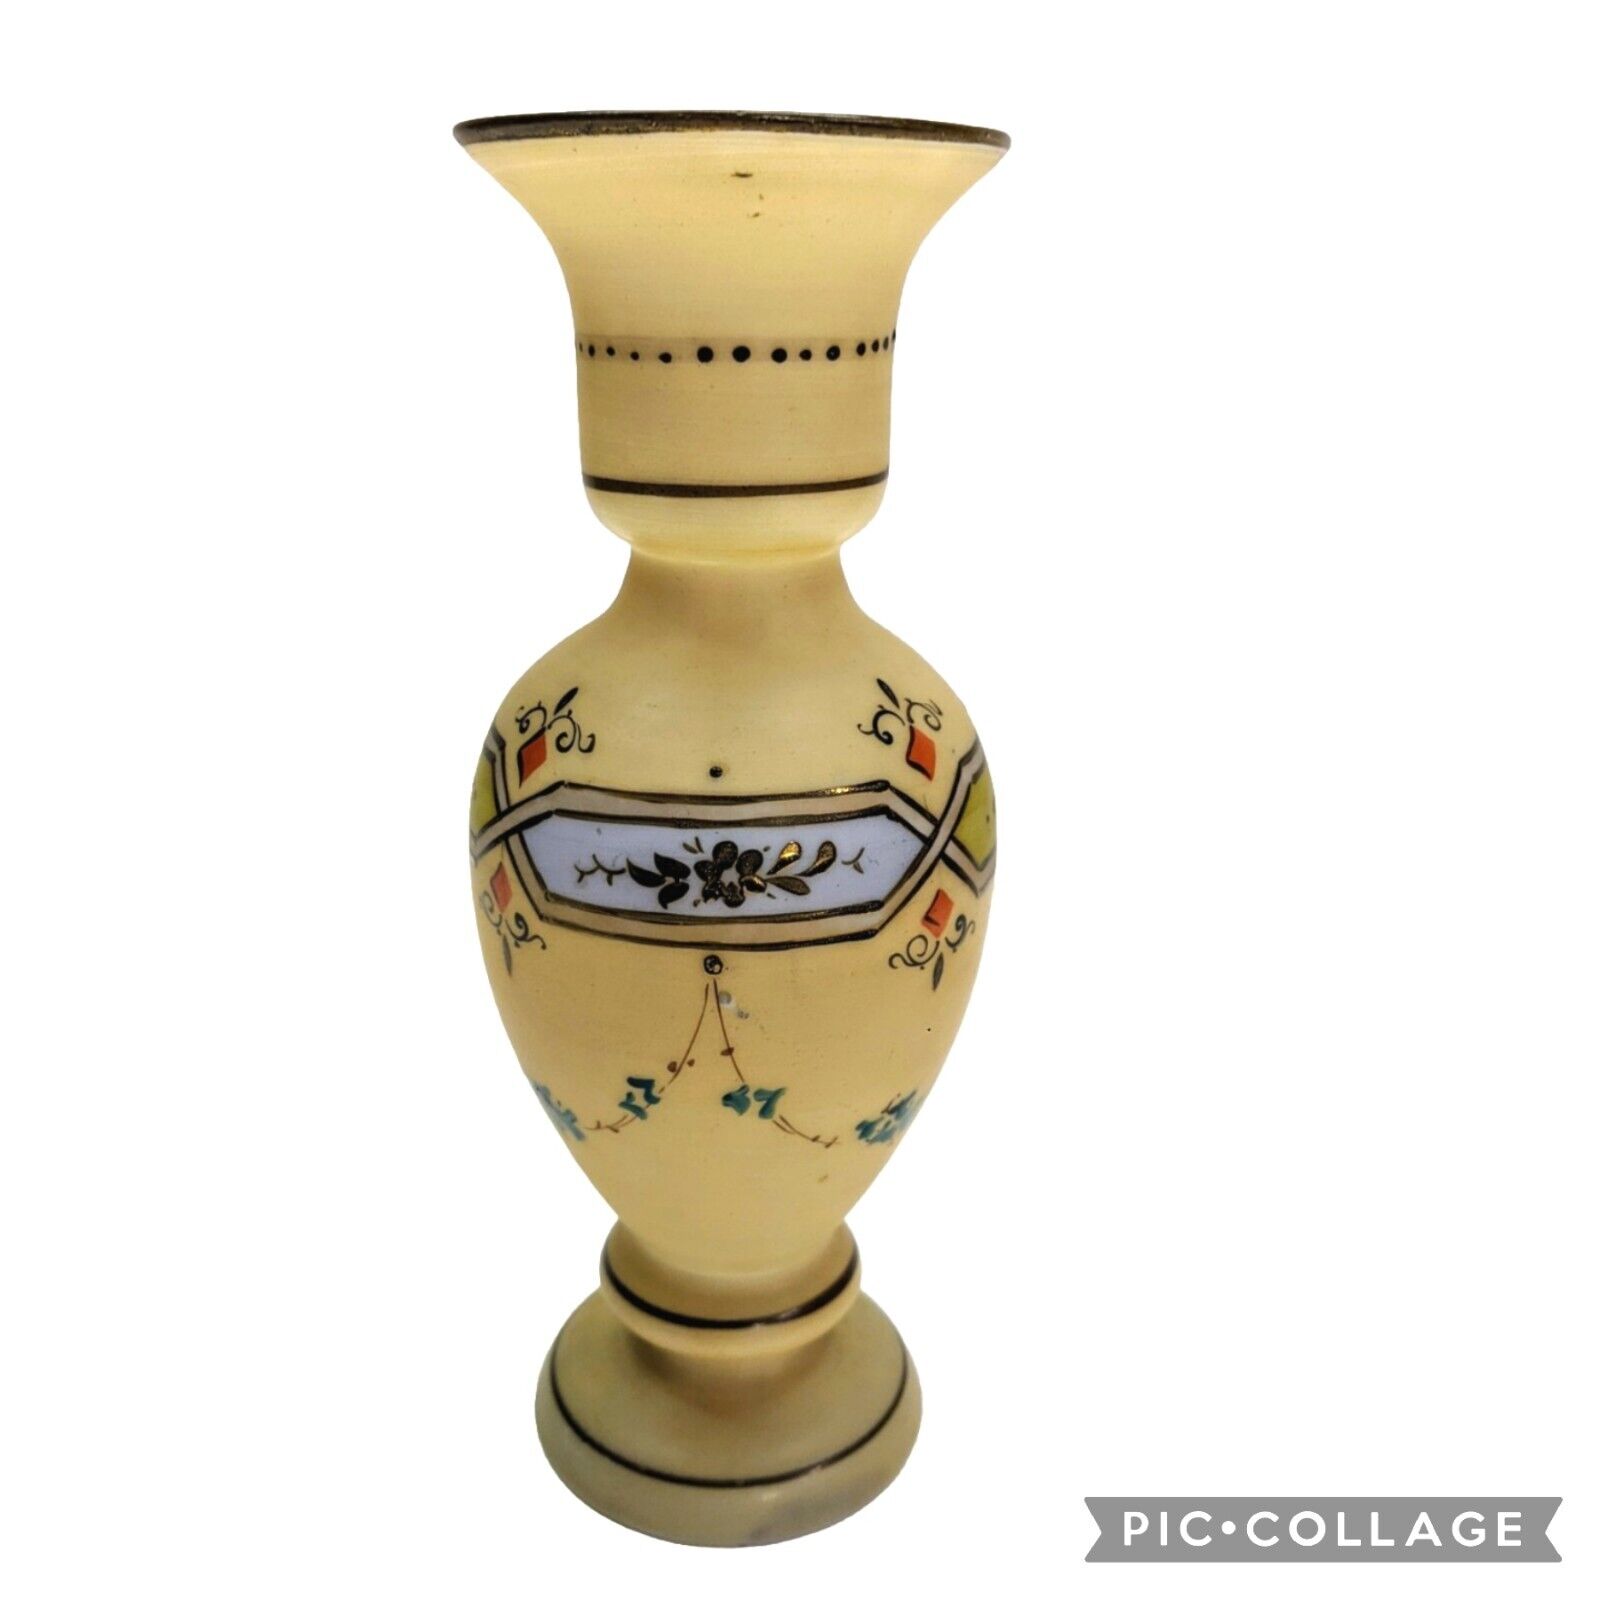 Antique Victorian Bristol Glass Handblown Vase Beige/Blue Art Deco Floral Design